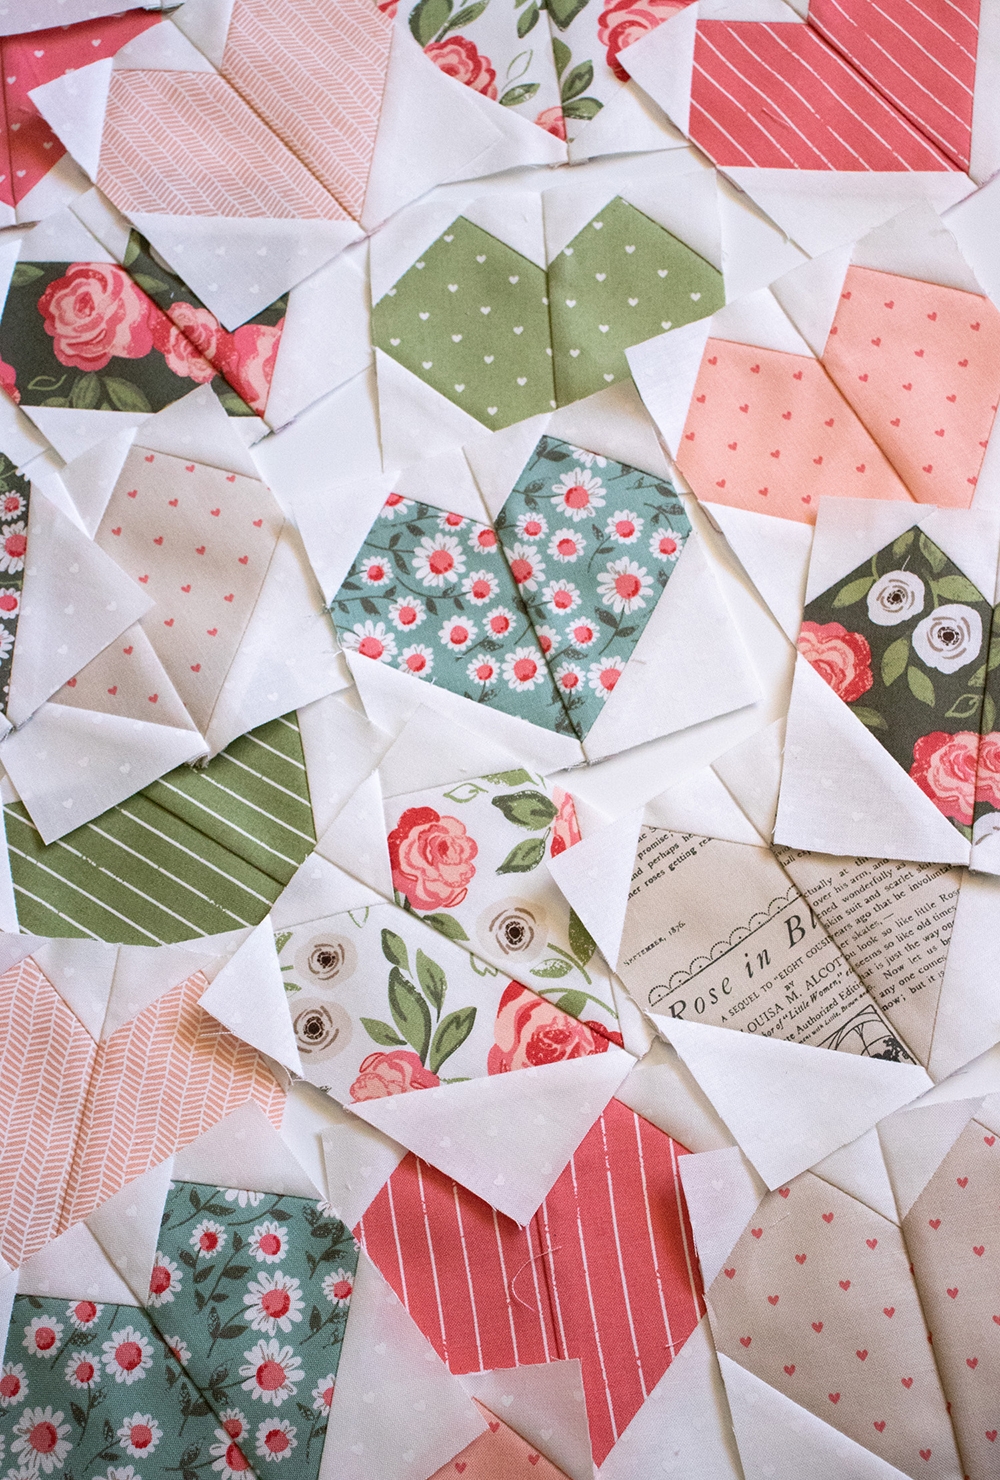 Cute little heart blocks from the Lovey Dovey quilt pattern by Vanessa Goertzen of Lella Boutique